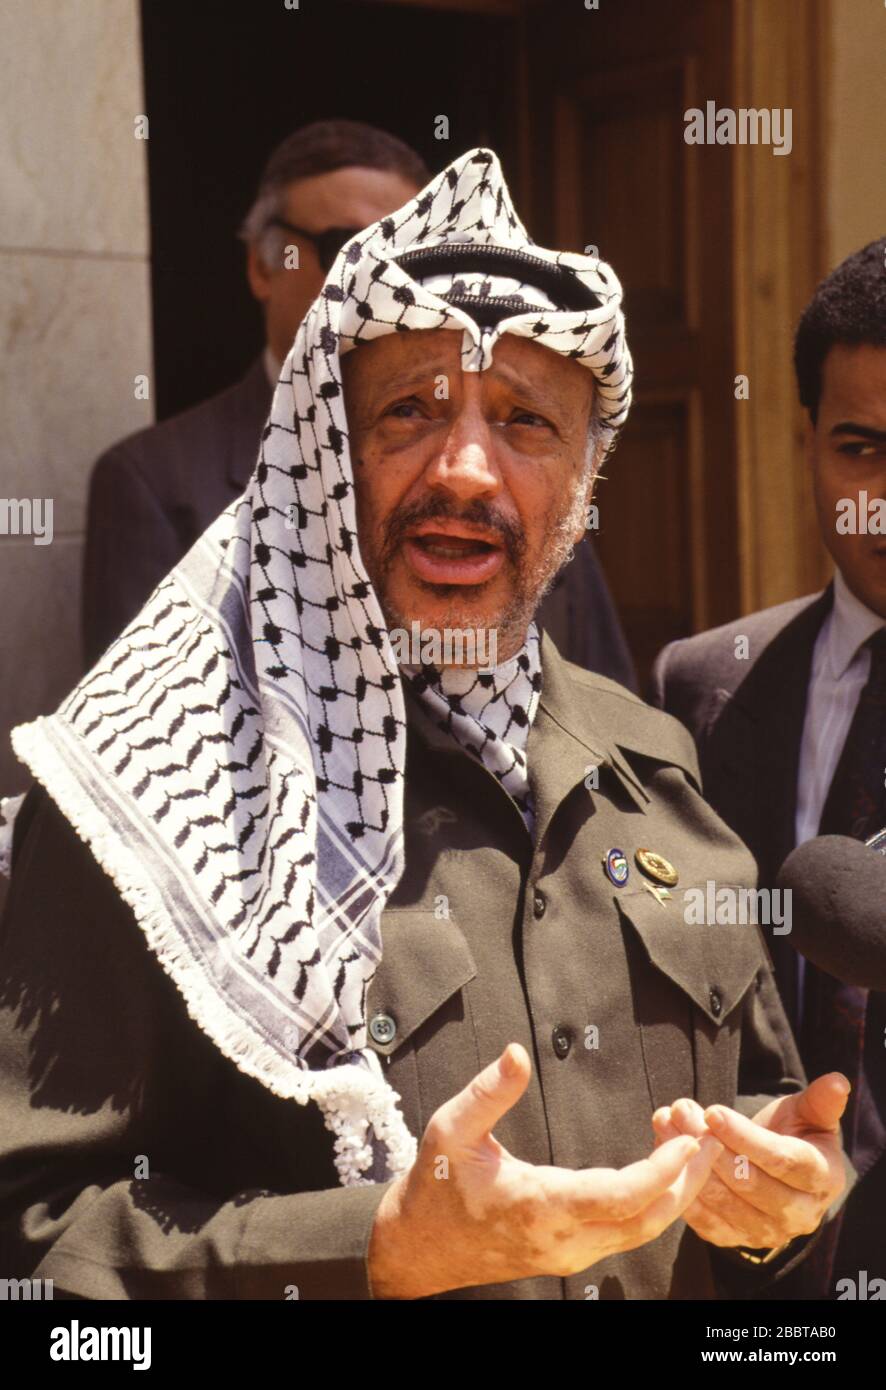 Le Caire, Egypte - 15 avril 1992 - le Président de l'OLP Yasser Arafat rencontre le Président égyptien Hosni Moubarak une semaine après qu'Arafat ait été impliqué dans un accident d'avion quasi